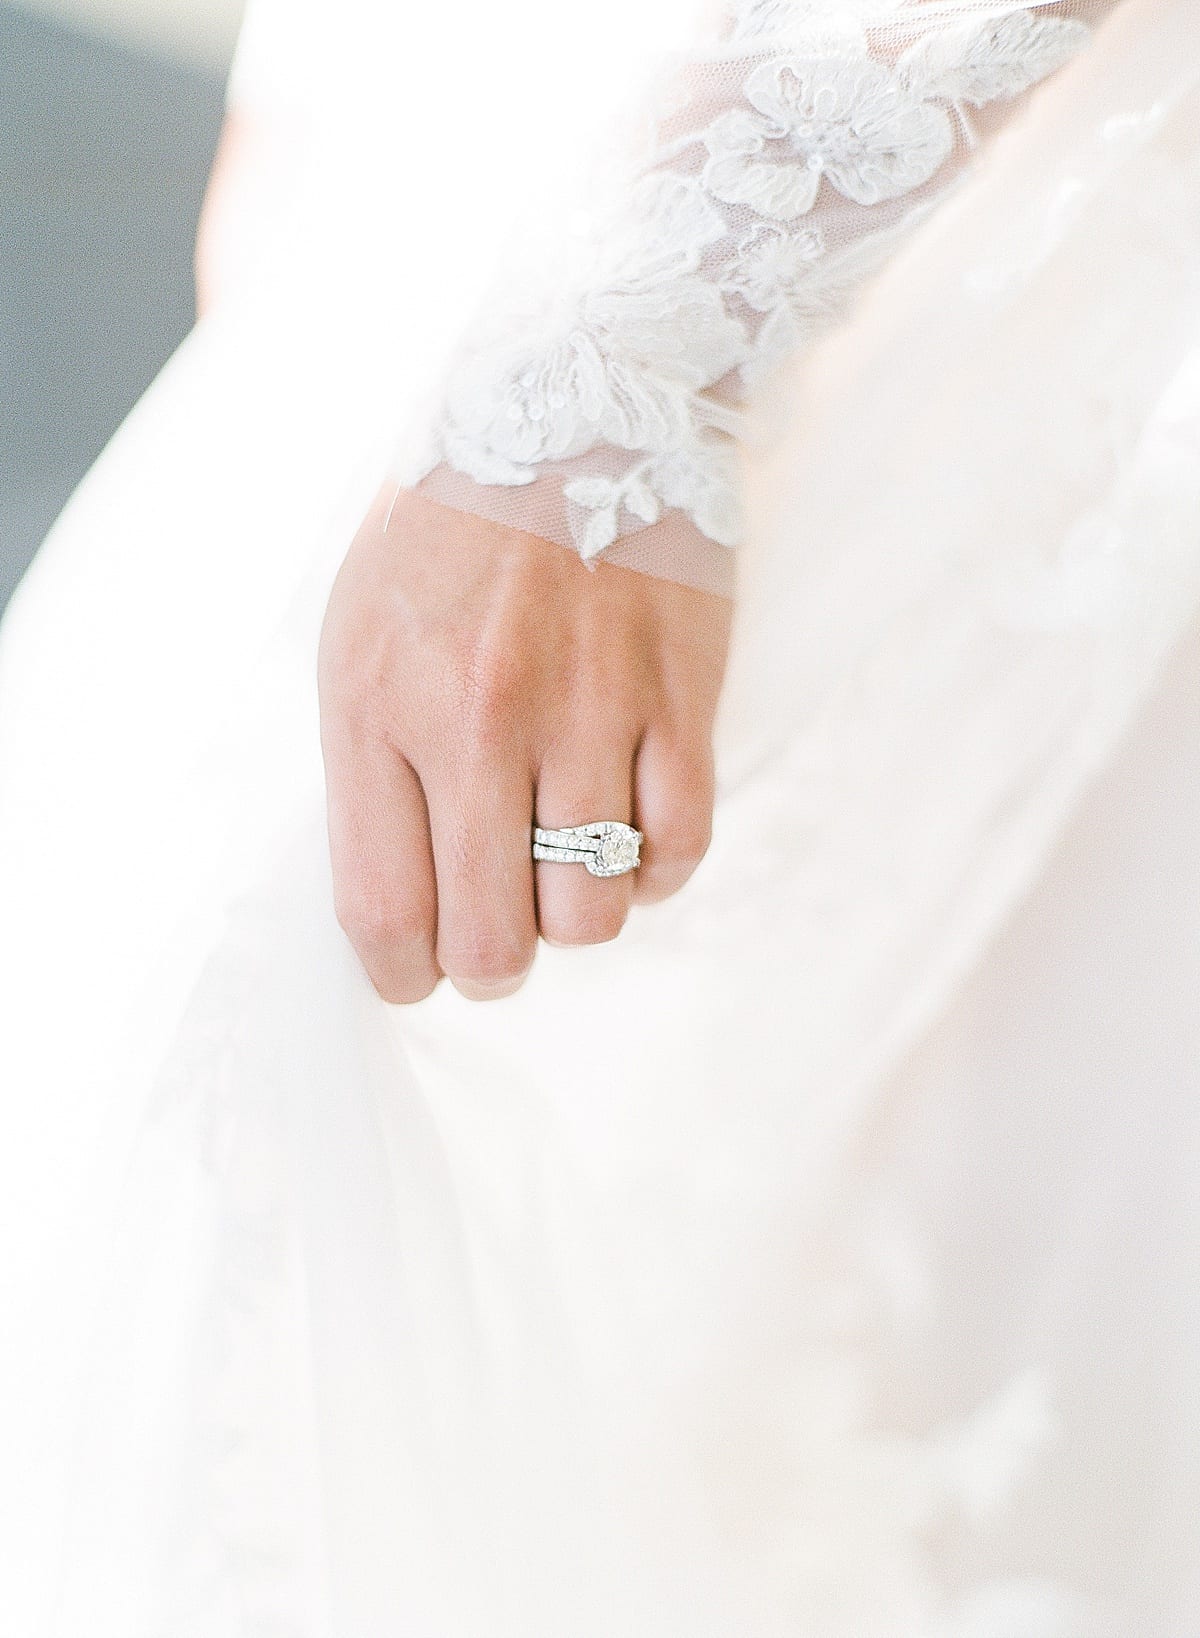 Bridal Detail of Wedding Ring Photo